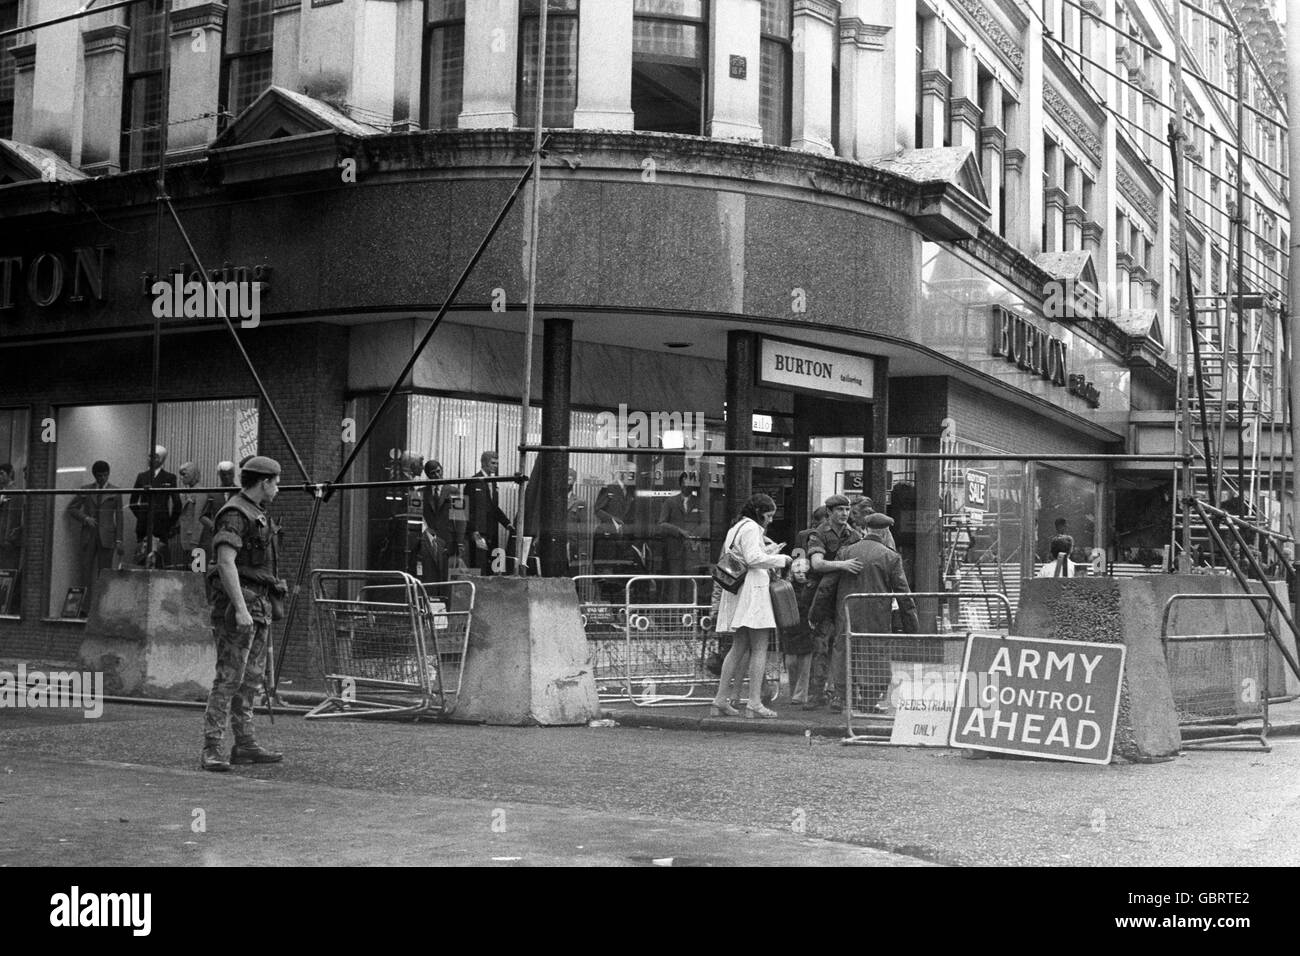 Die Käufer werden heute im Zentrum von Belfast gesehen, wo sie von Truppen kontrolliert und durchsucht werden. Ein Warnhinweis weist Fußgänger darauf hin, dass die Armeekontrolle im Herzen des Einkaufszentrums der Stadt tätig ist. Stockfoto